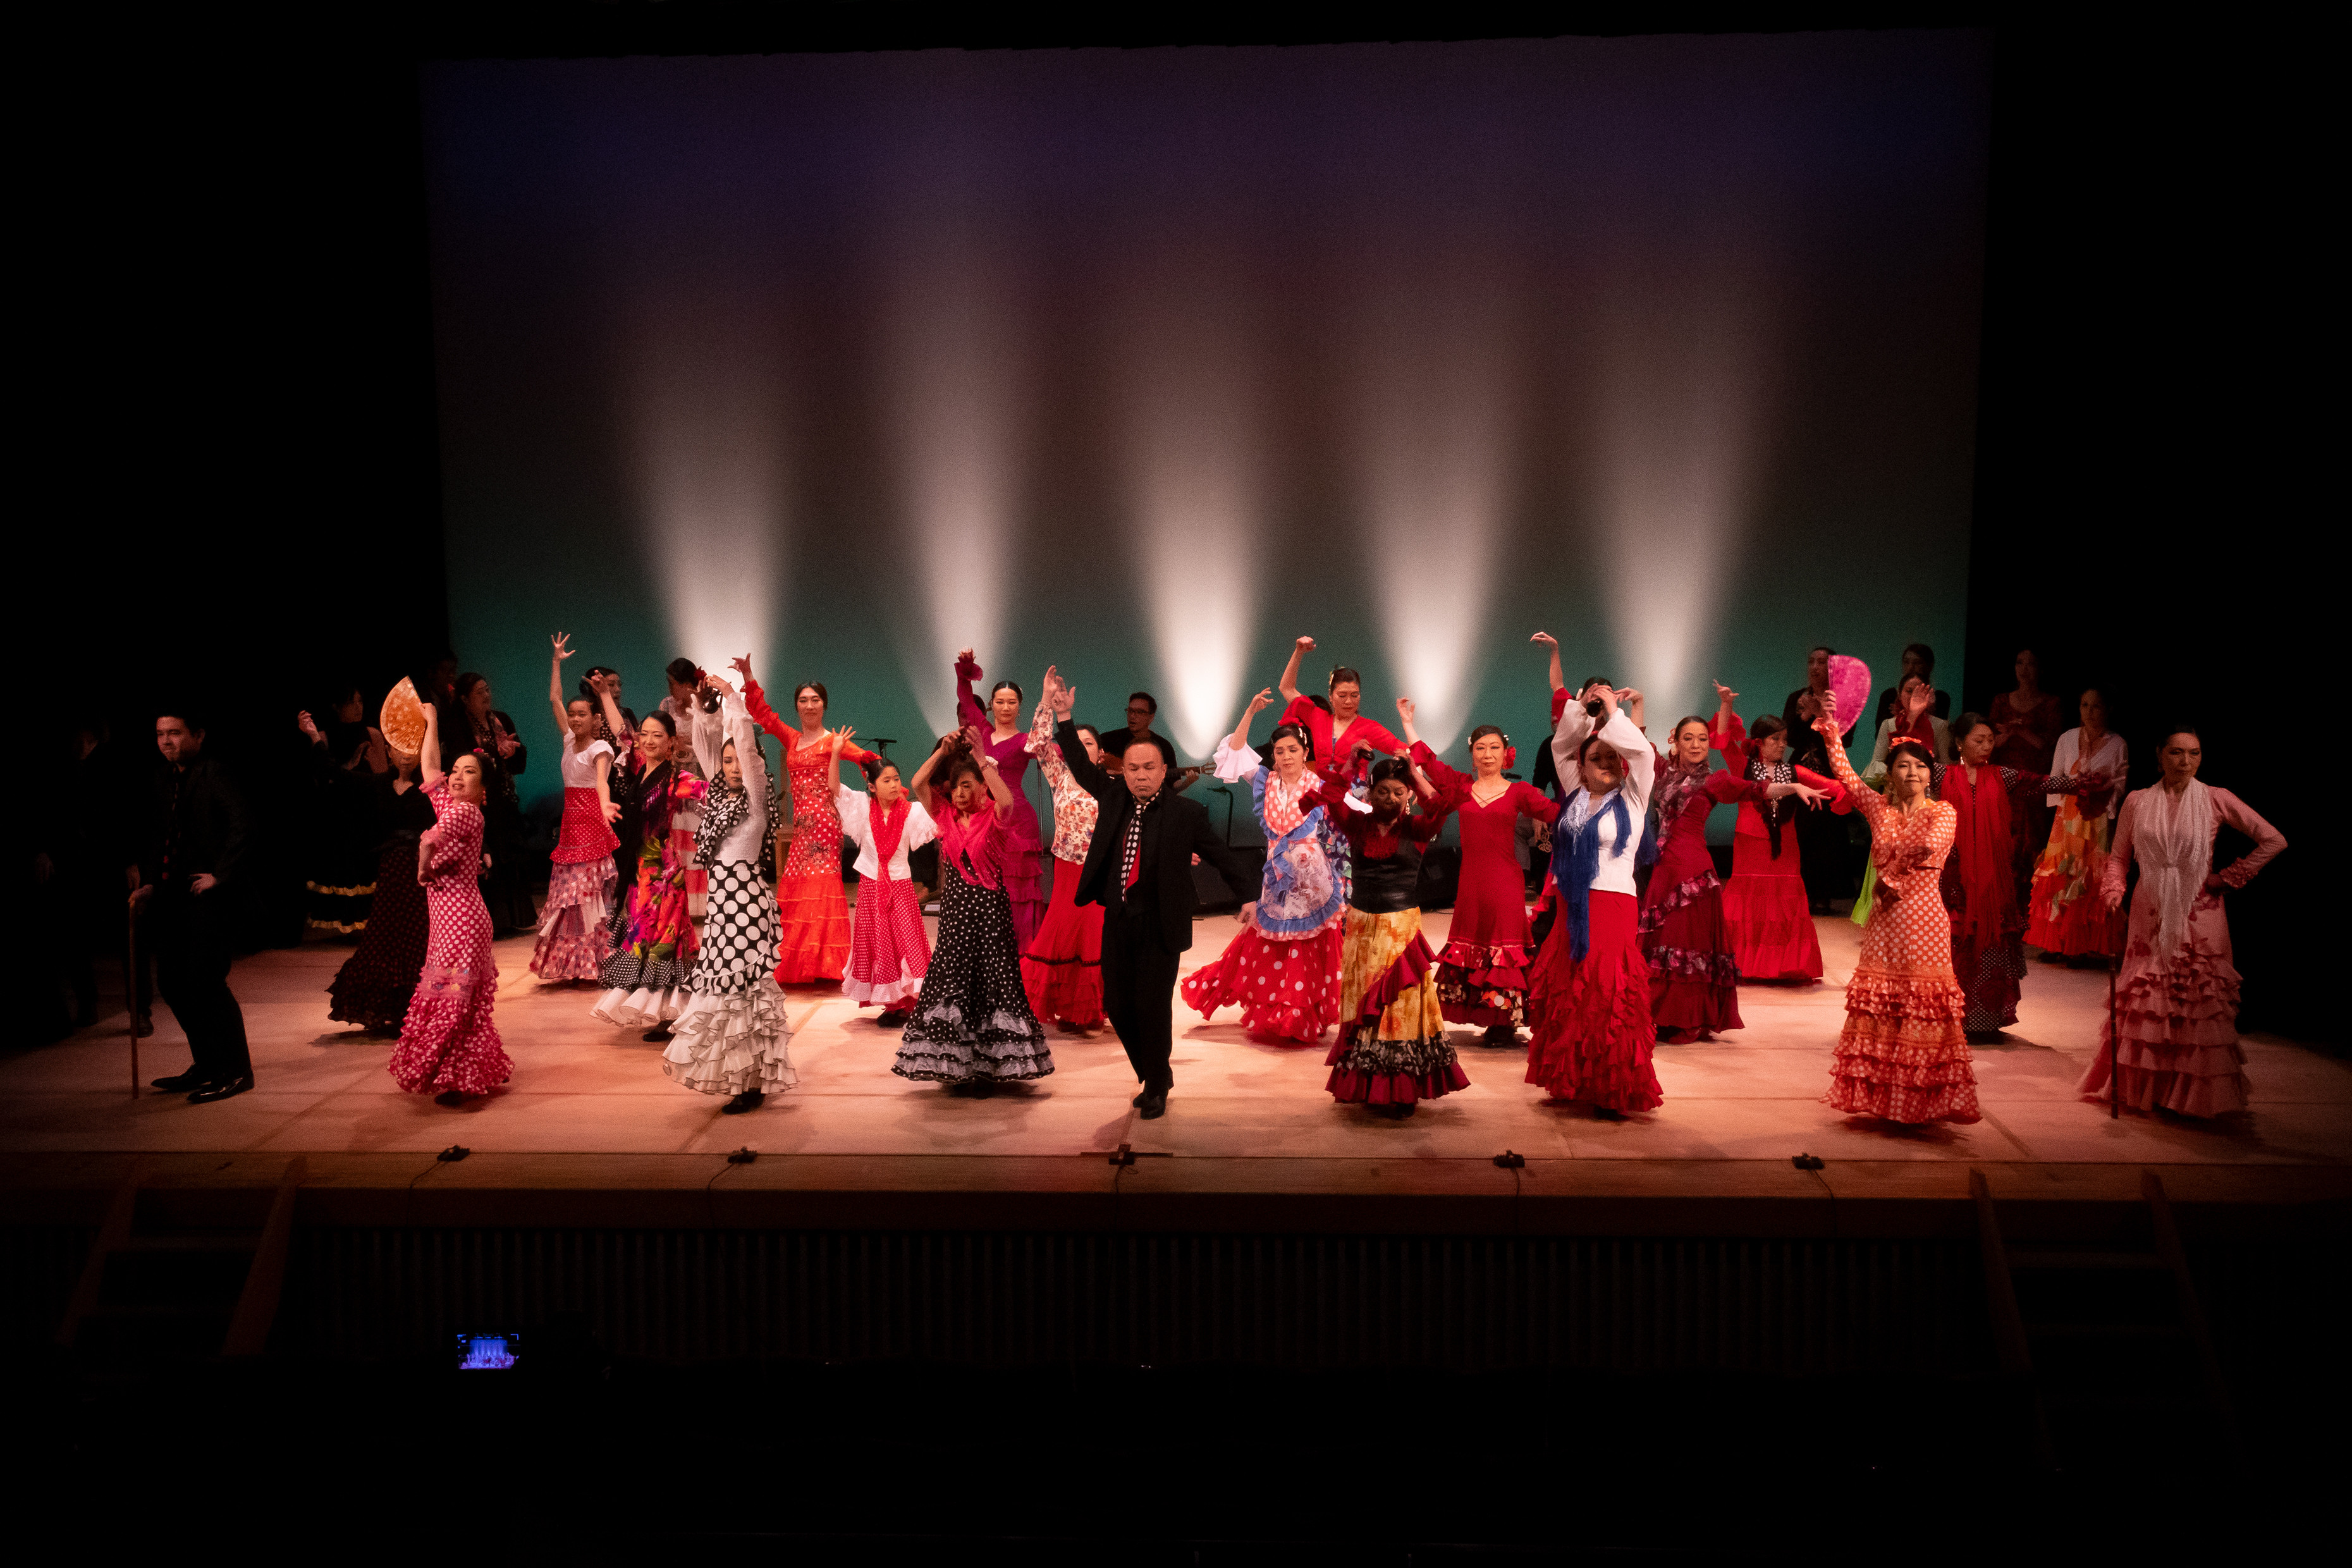 8月1日(日) 第10回 Flamenco光舞 井上光正フラメンコ教室発表会 開催いたします